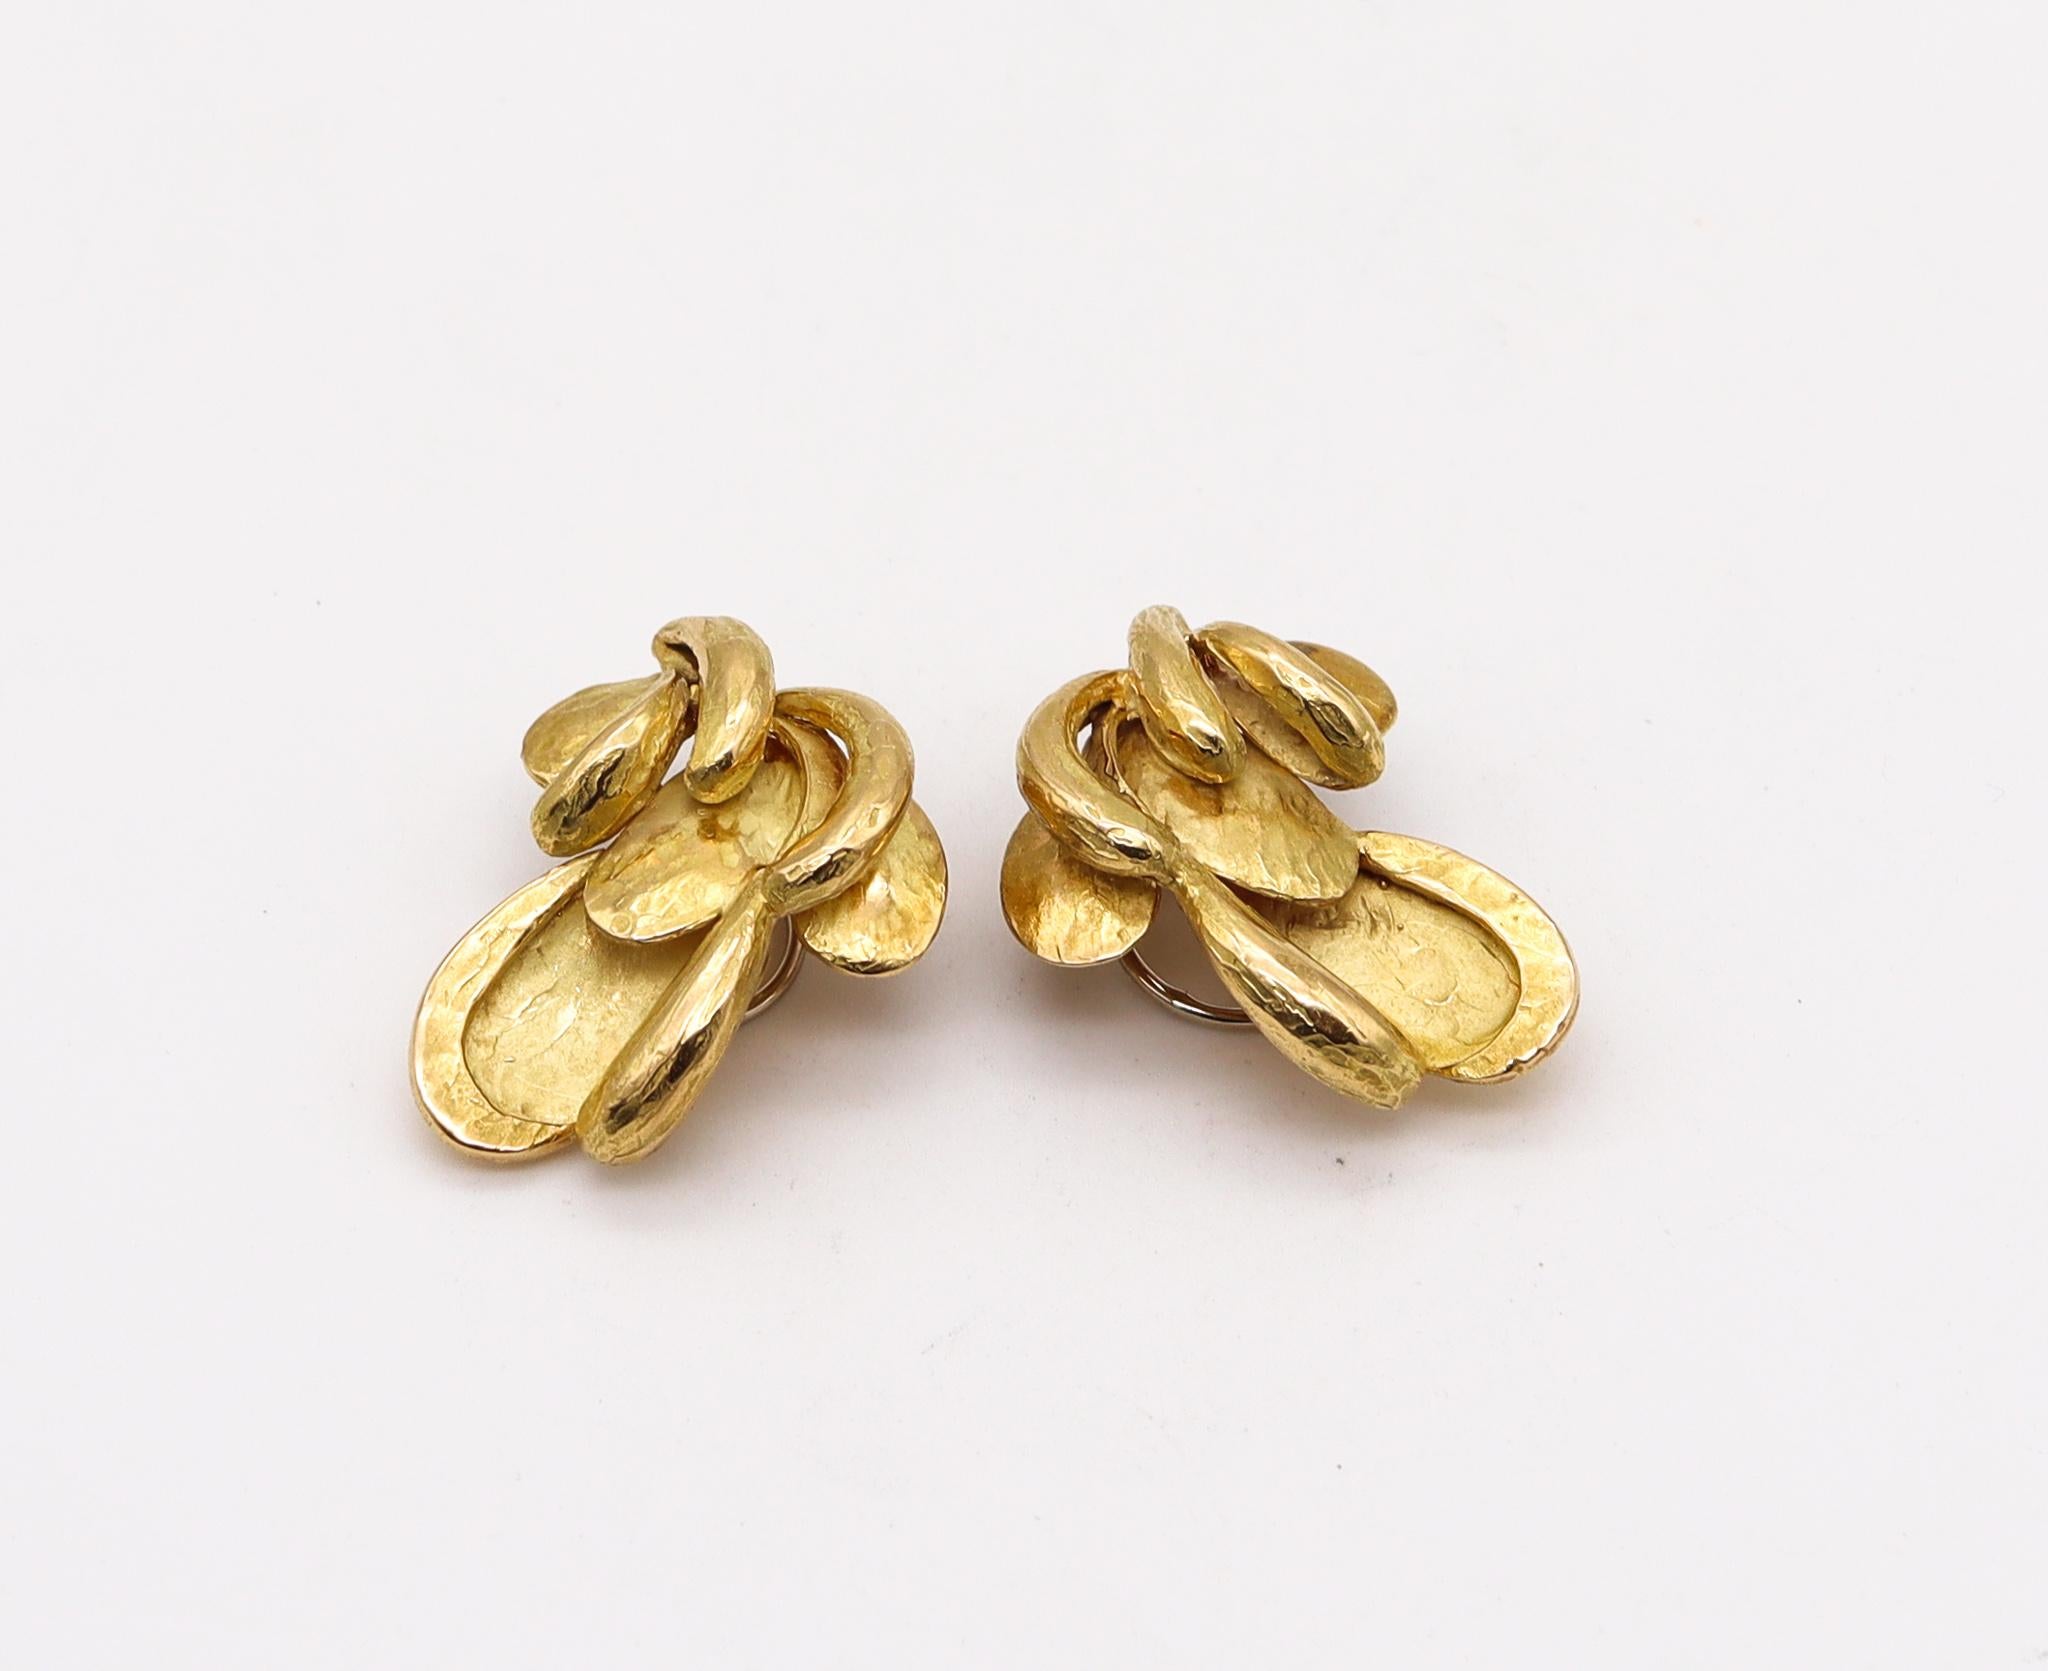 Boucles d'oreilles à clips organiques créées par Chaumet.

Une paire de boucles d'oreilles vintage, fabriquée à Paris, en France, par la maison de joaillerie Chaumet, dans les années 1970. Ces boucles d'oreilles ont été conçues comme une paire